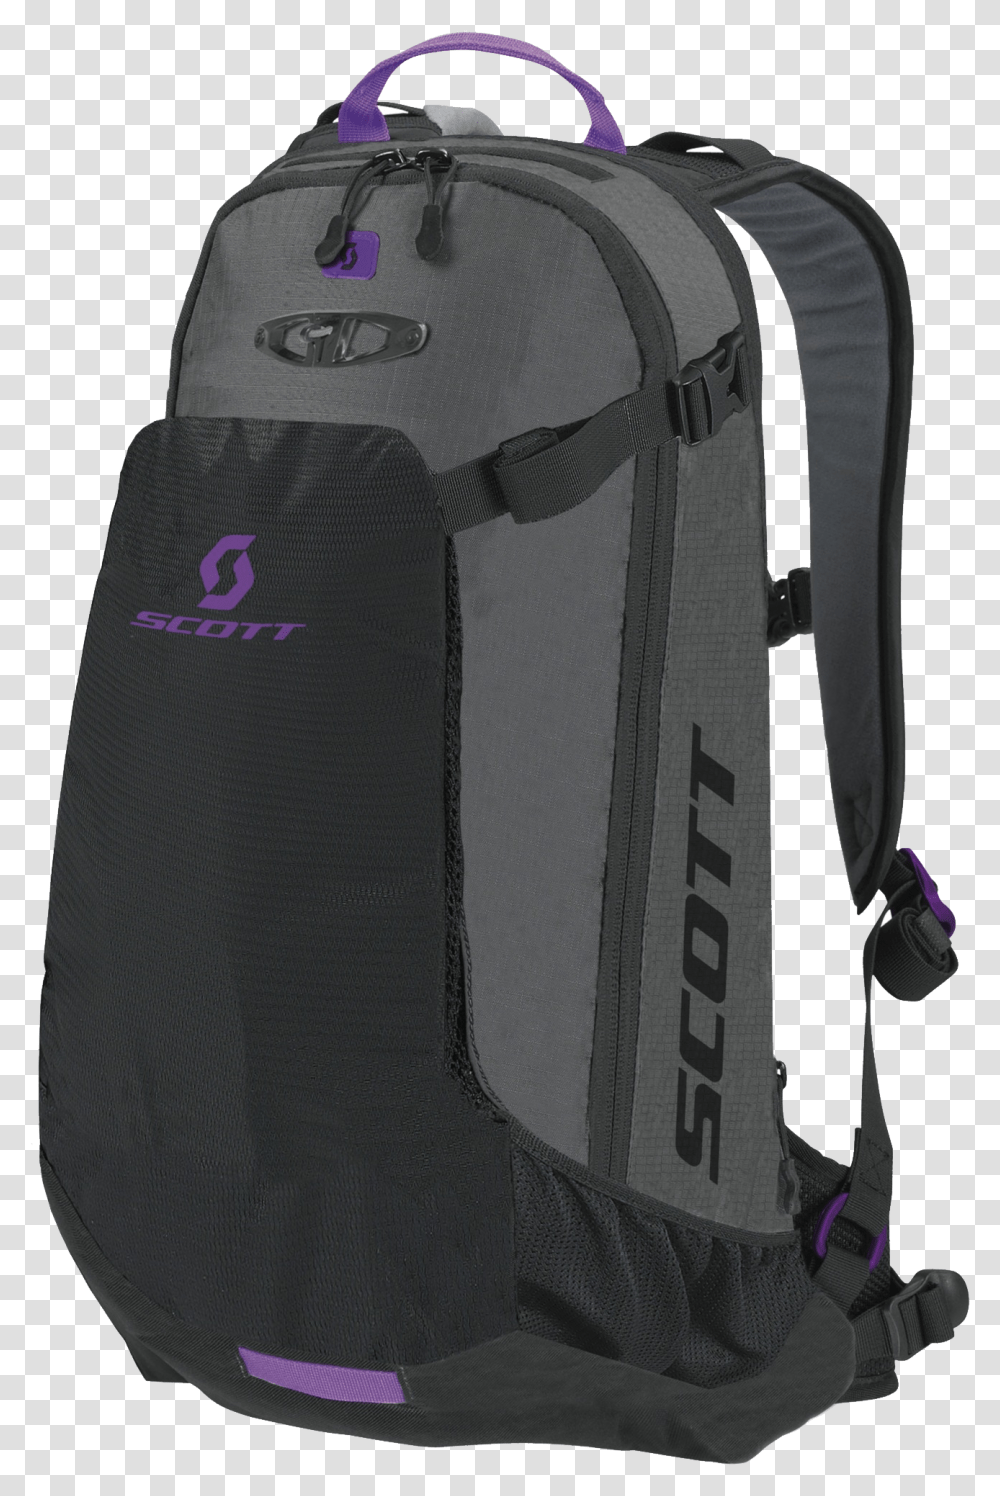 Backpack File Background Backpack, Bag Transparent Png